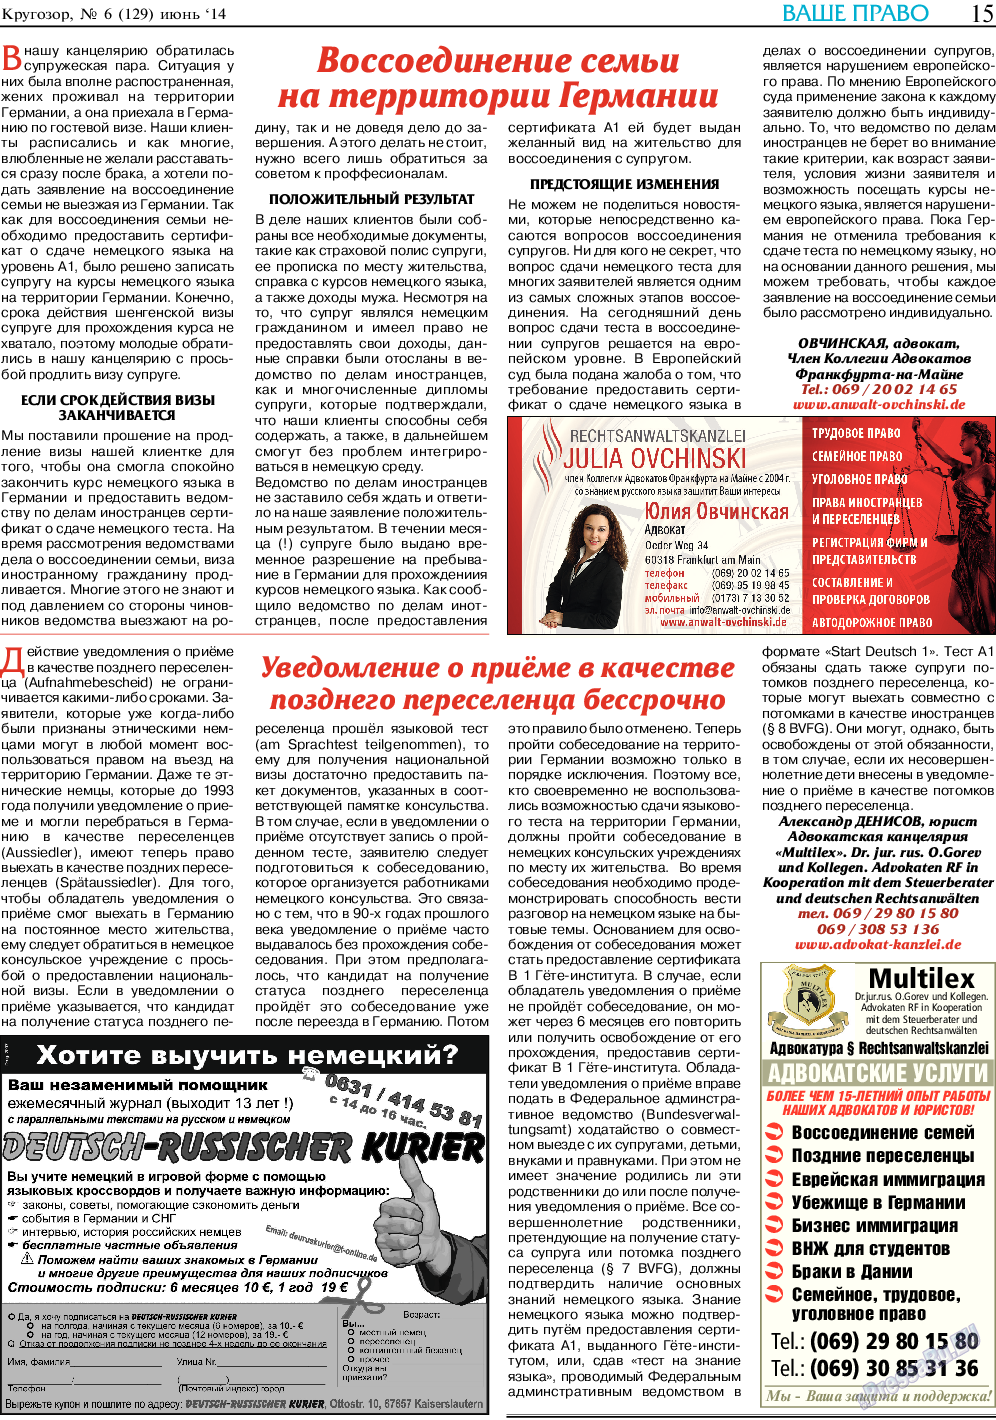 Кругозор, газета. 2014 №6 стр.15